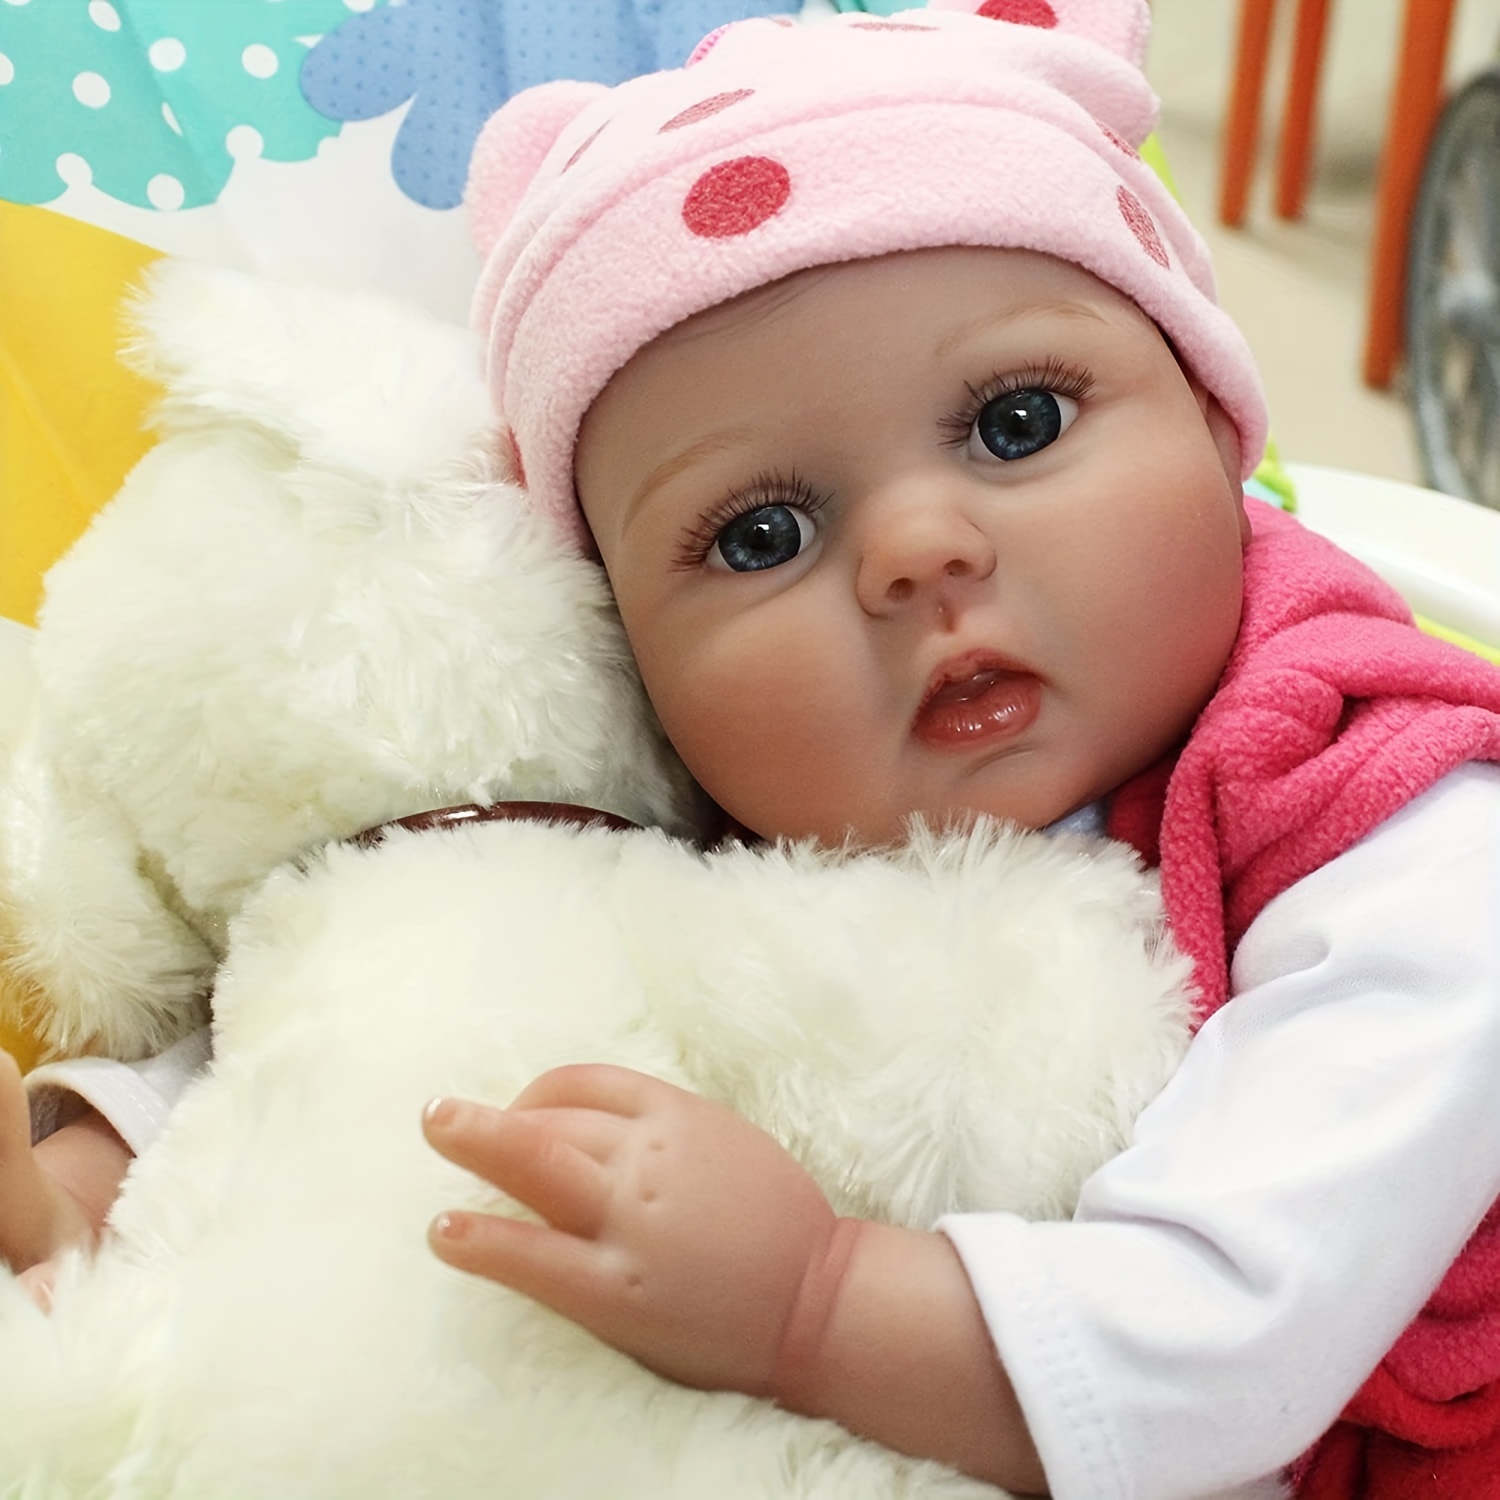  Cama de muñeca de madera, Babydoll cama de bebé muñeca muebles  muñeca ropa de cama de juguete bebé bebé juguete cuna para casa de muñecas  : Juguetes y Juegos